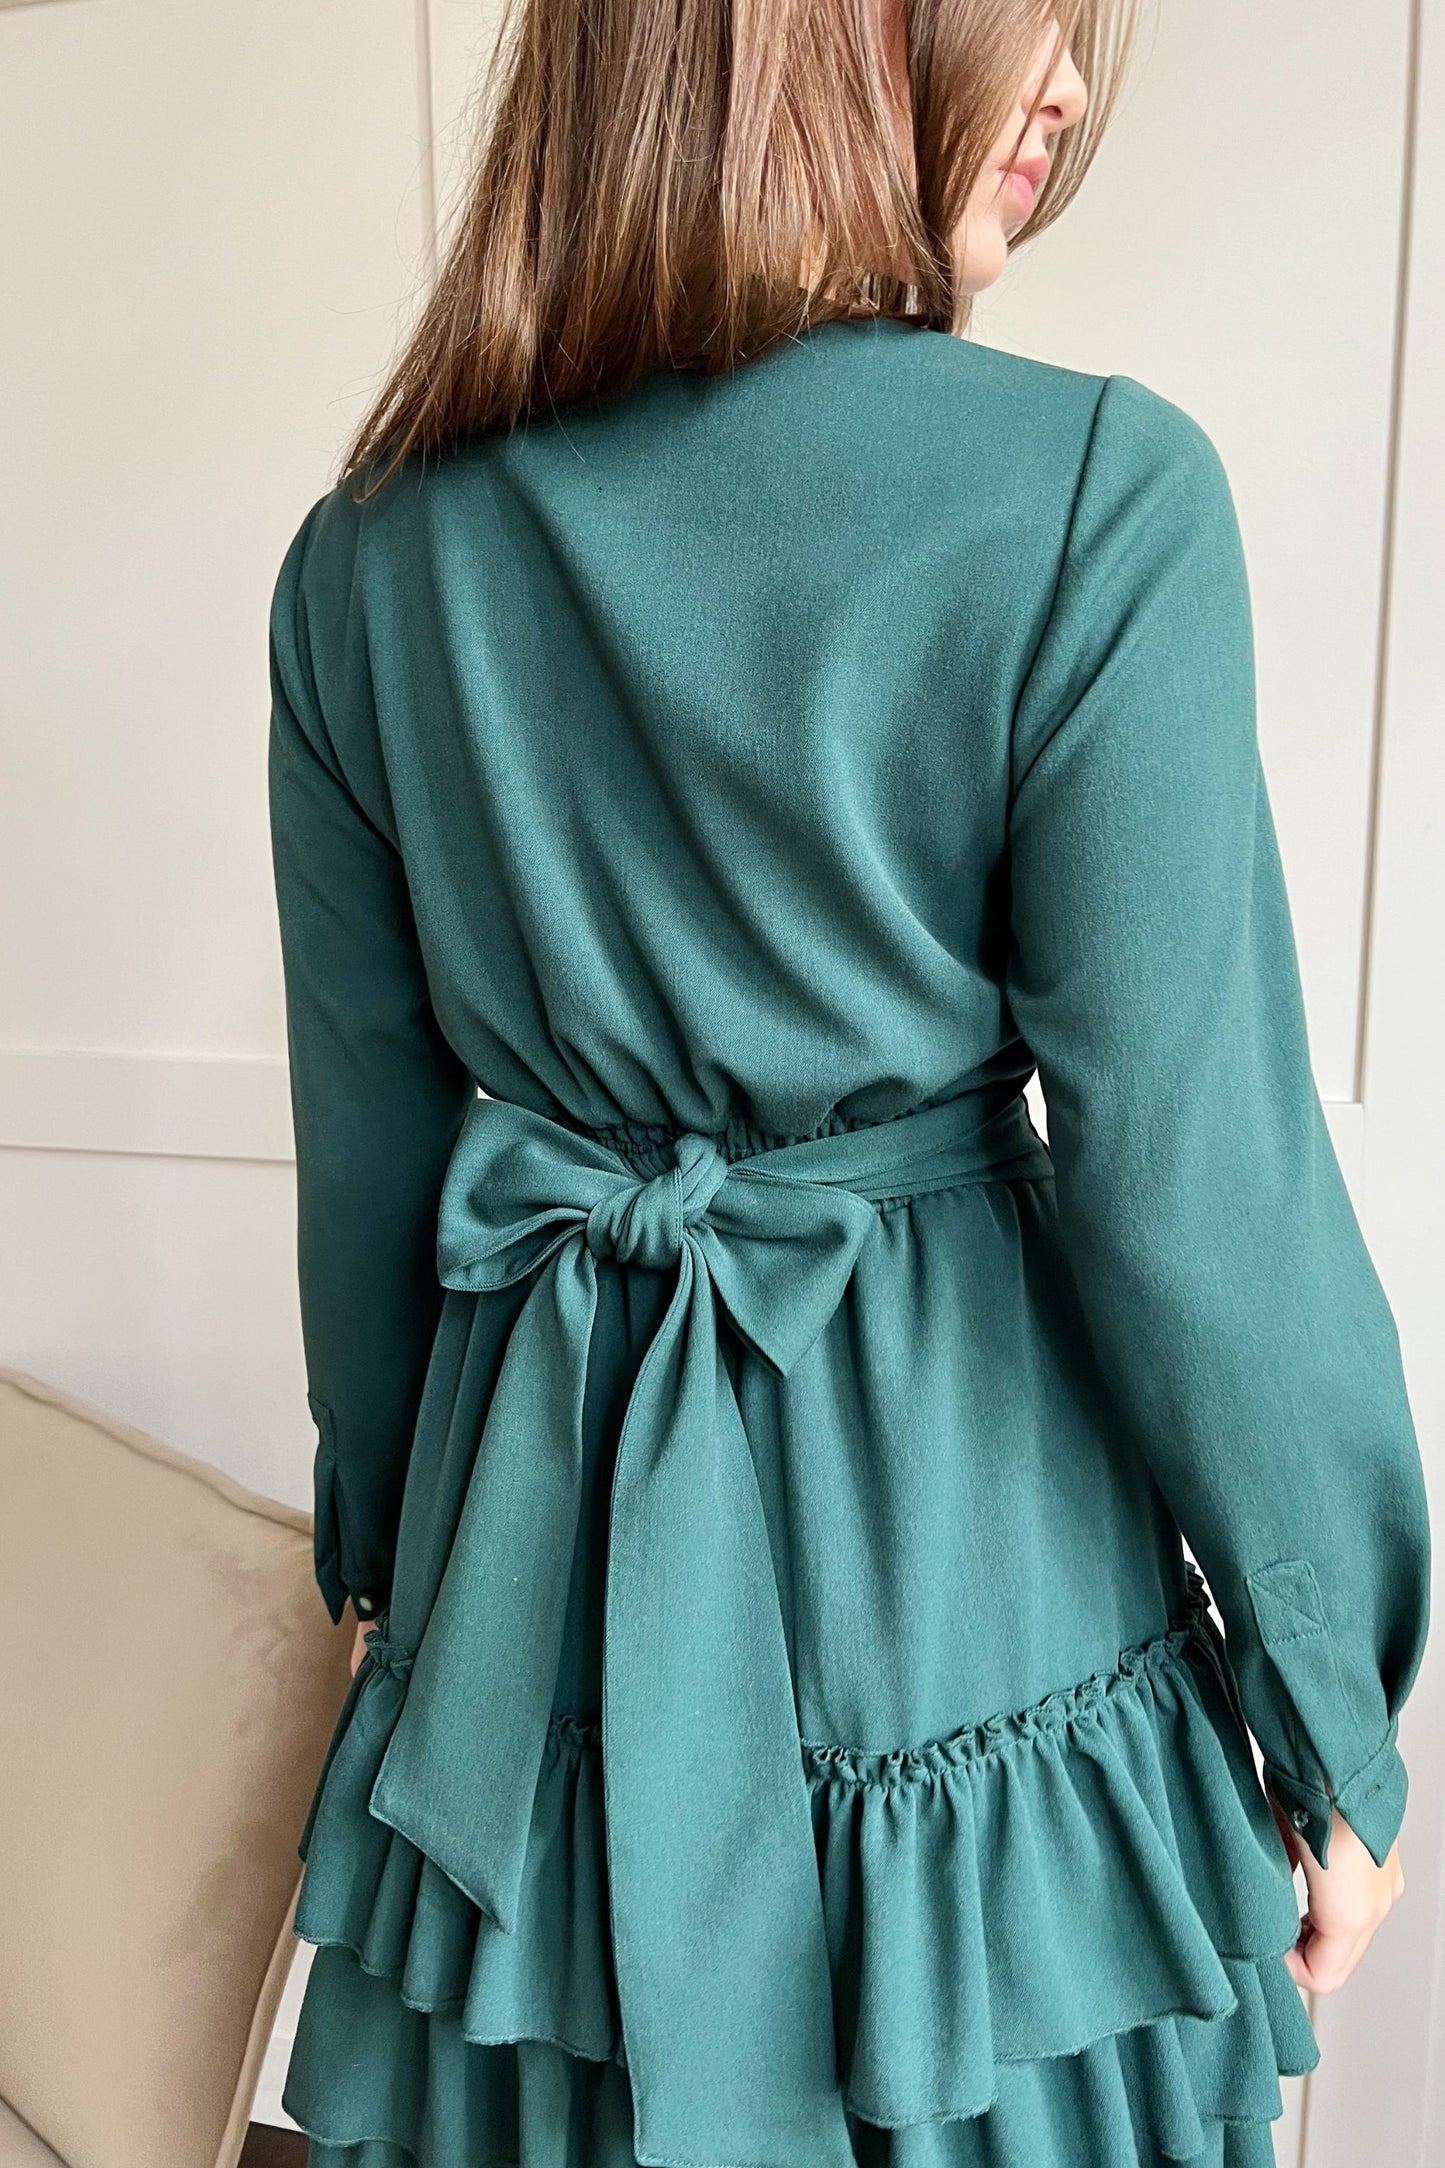 Green autumn dress with ruffles